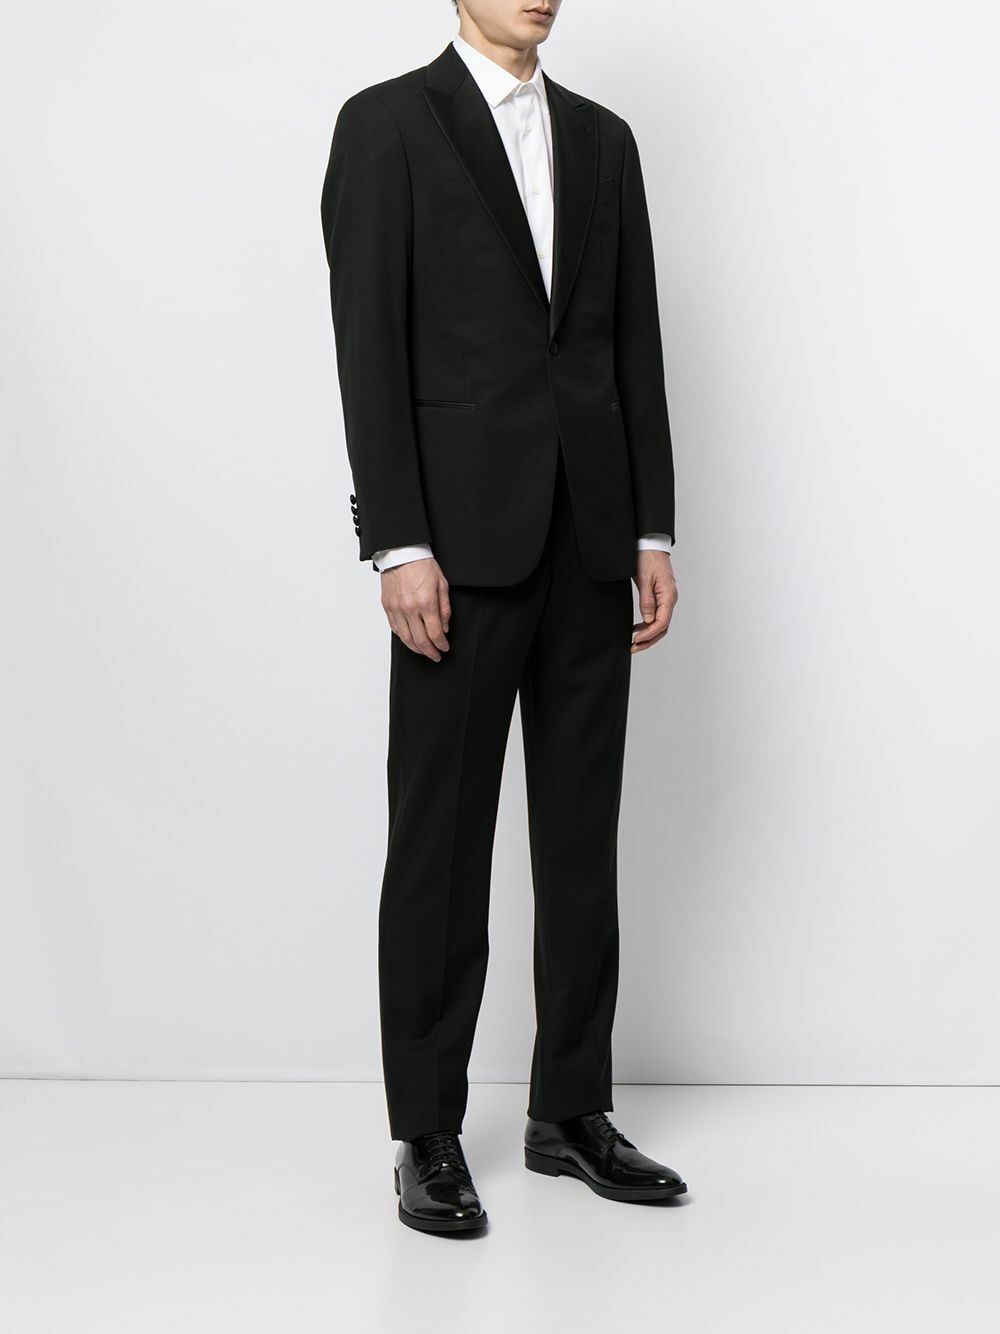 Discover 65+ giorgio armani grey suit